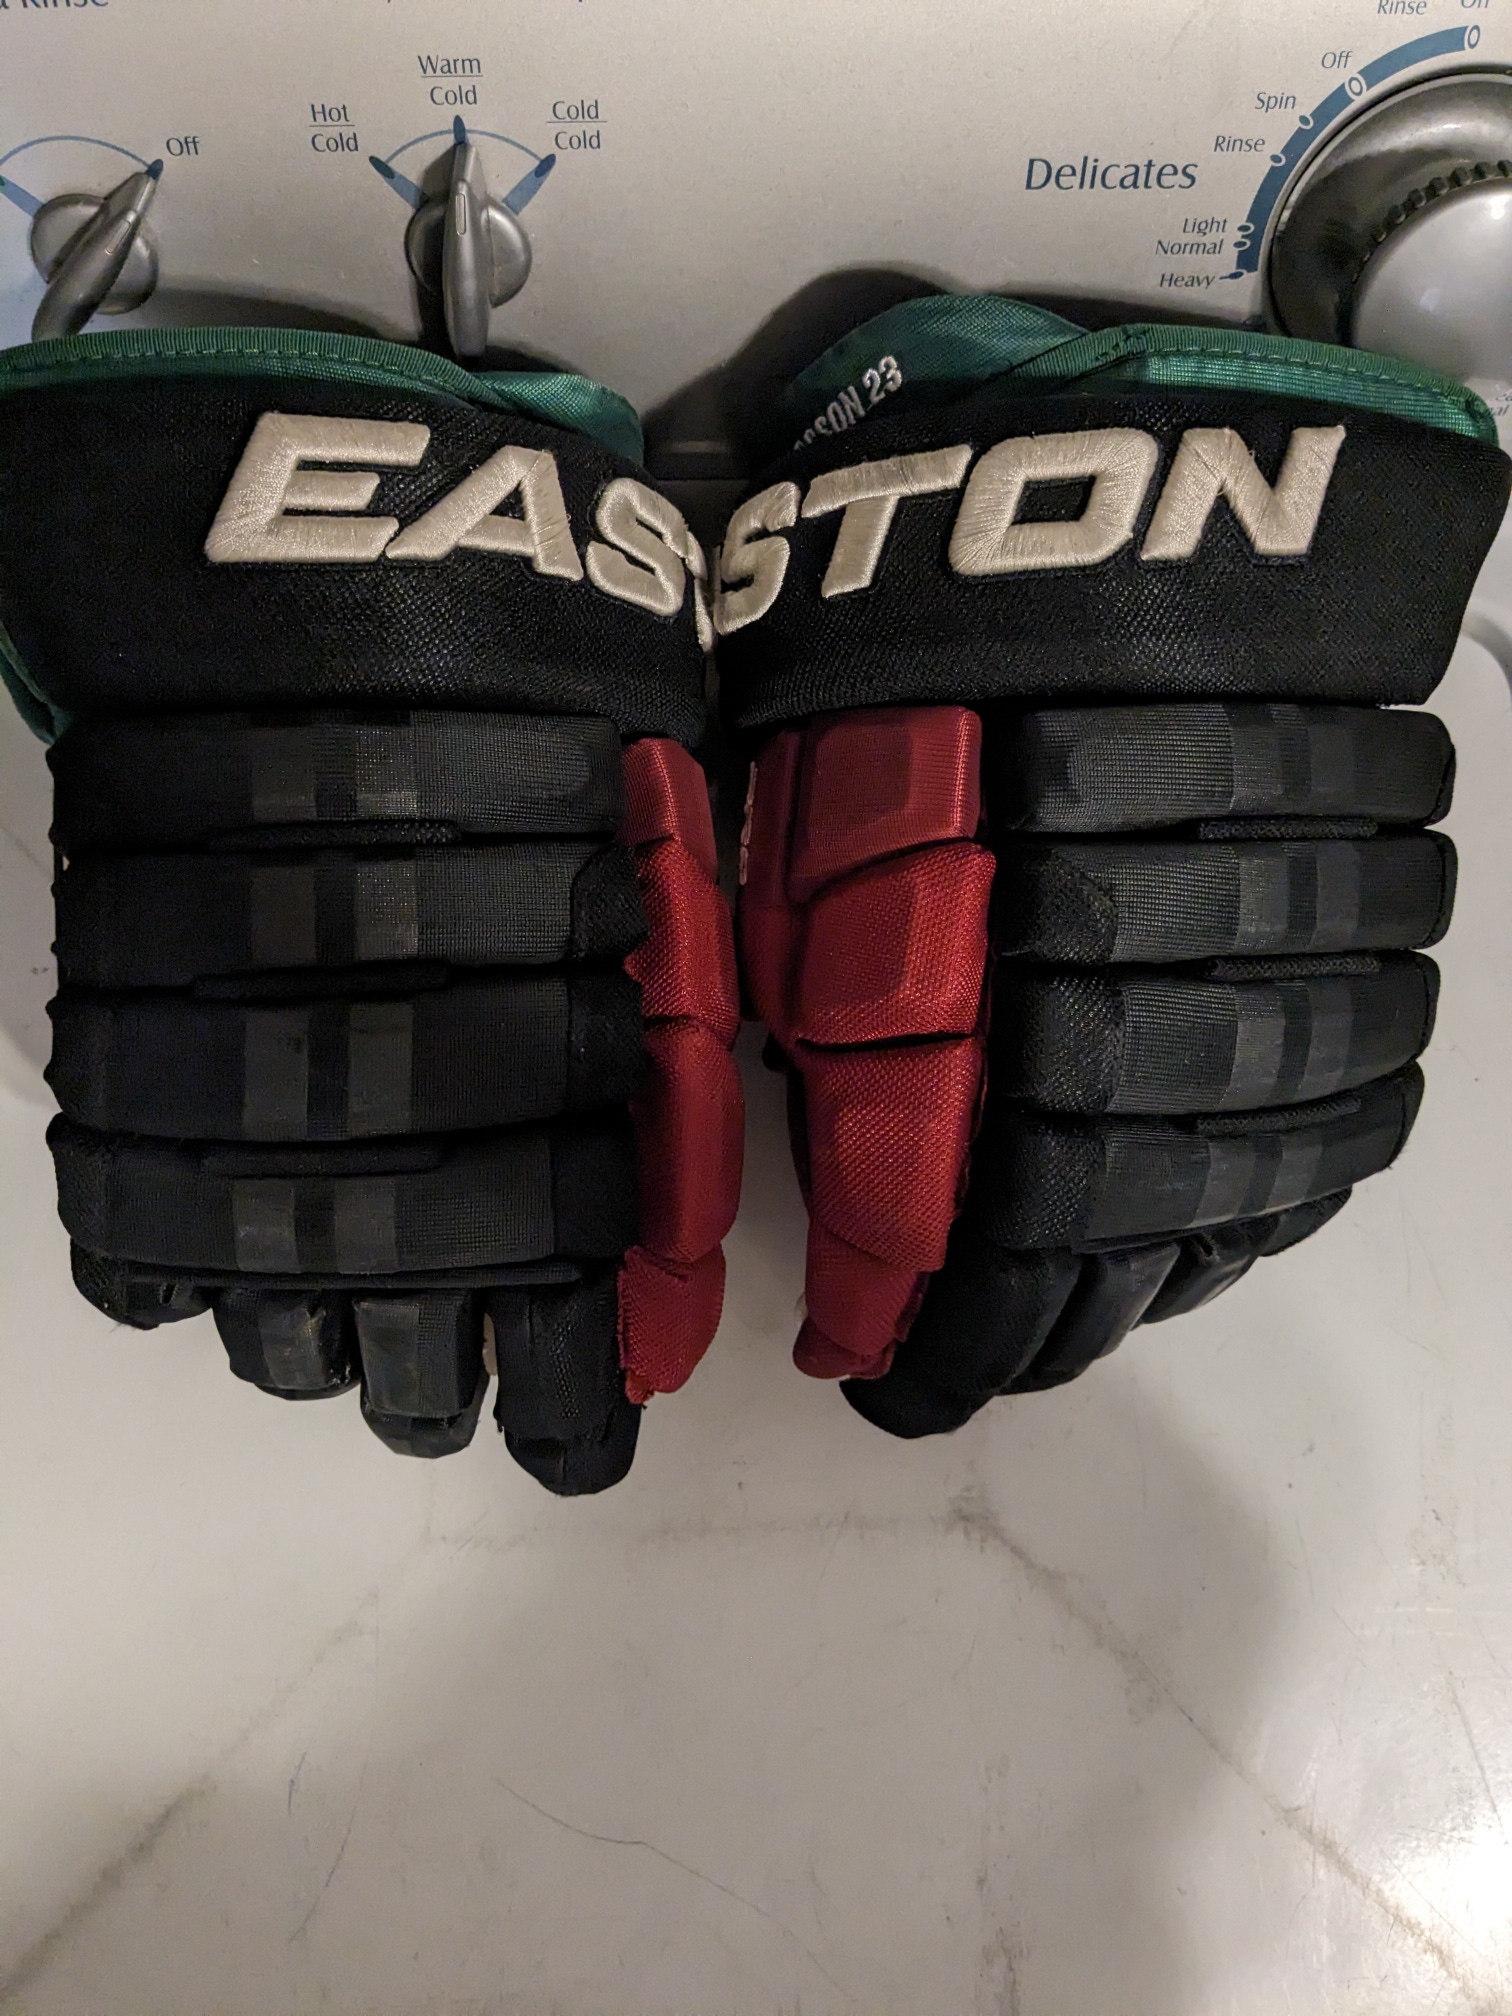 Easton Pro 4 Roll Gloves 15" Pro Stock